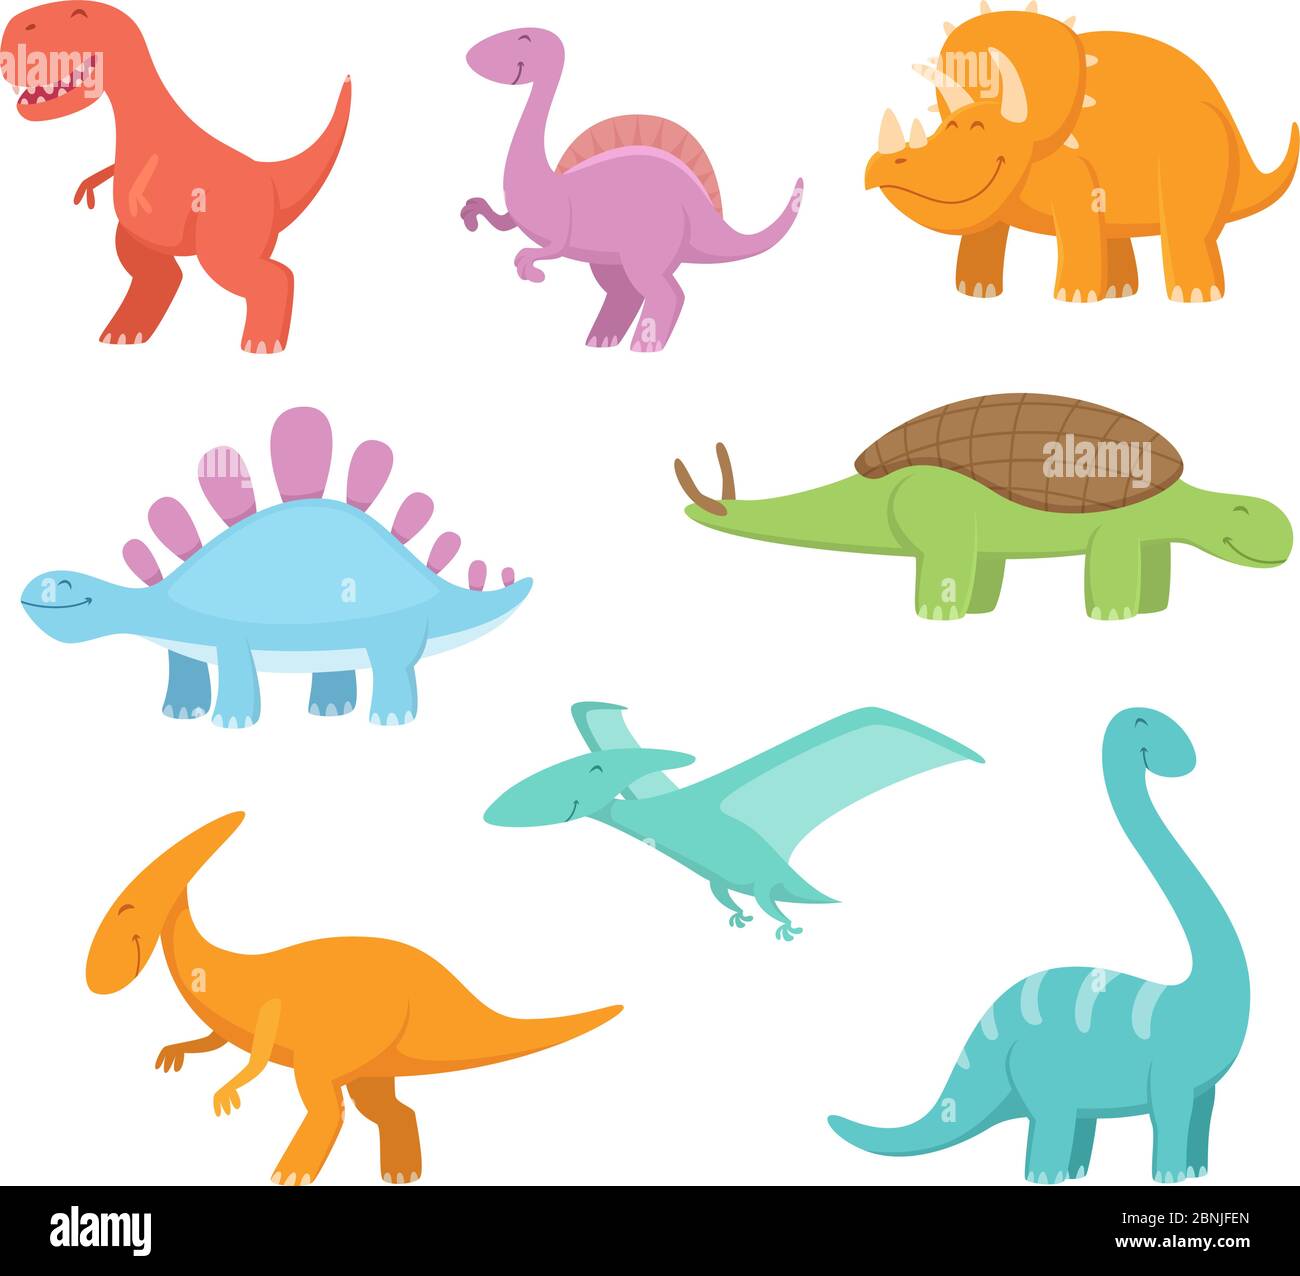 Ensemble de dessins animés de dinosaures amusants. Images vectorielles de la période préhistorique Illustration de Vecteur